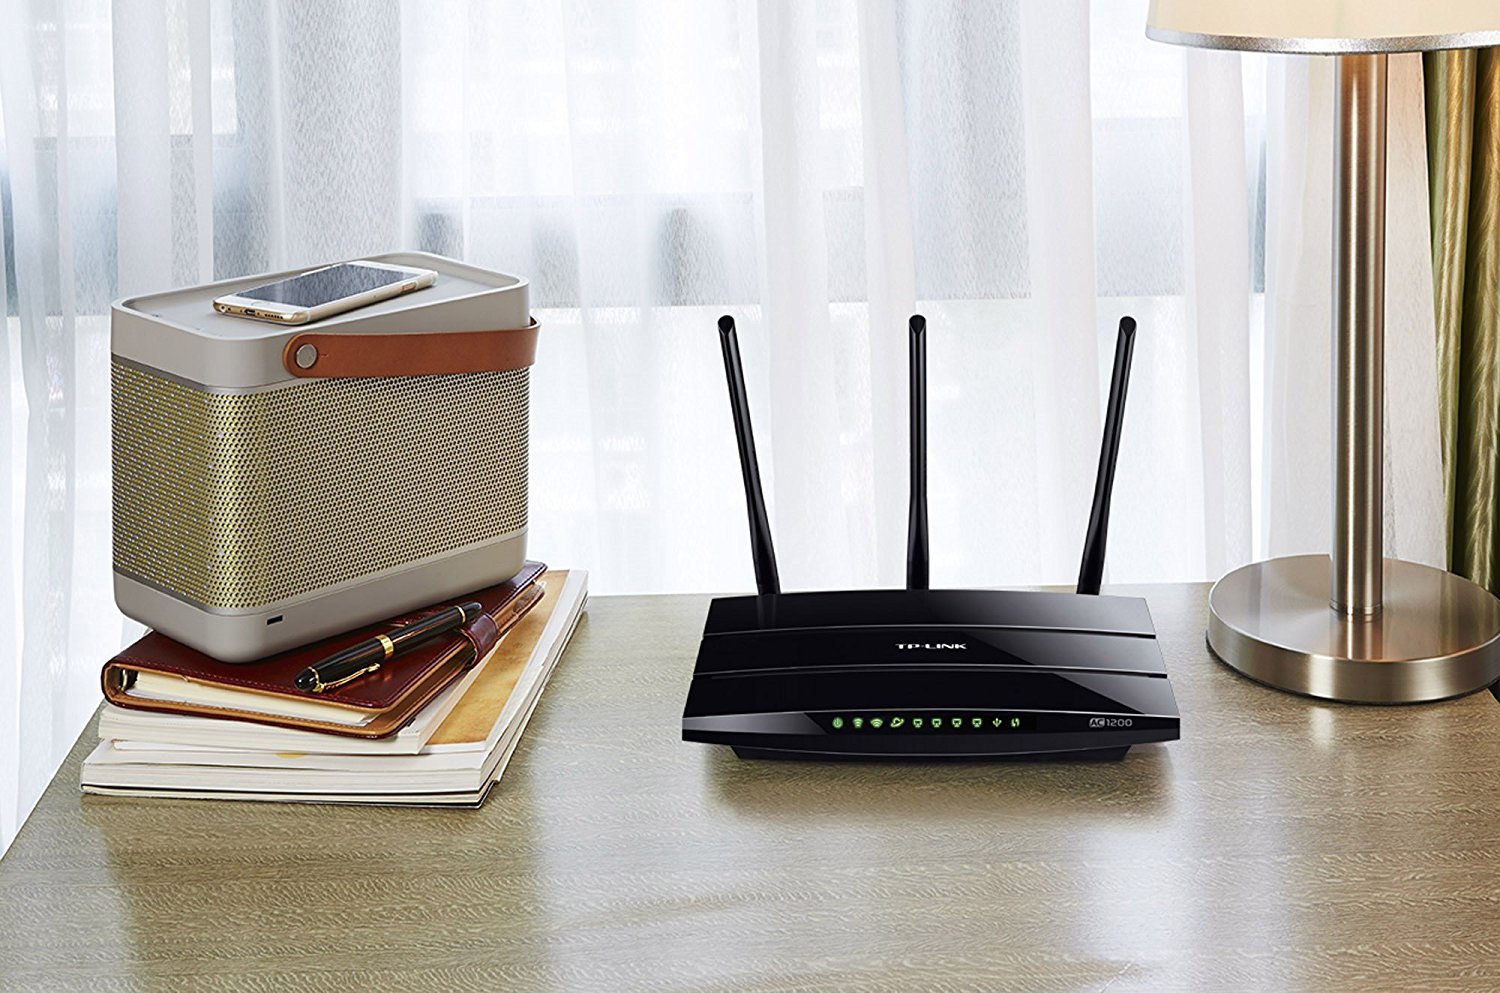 Router wifi TP-Link Archer C1200 AC1200 características, precio, instalación y opiniones